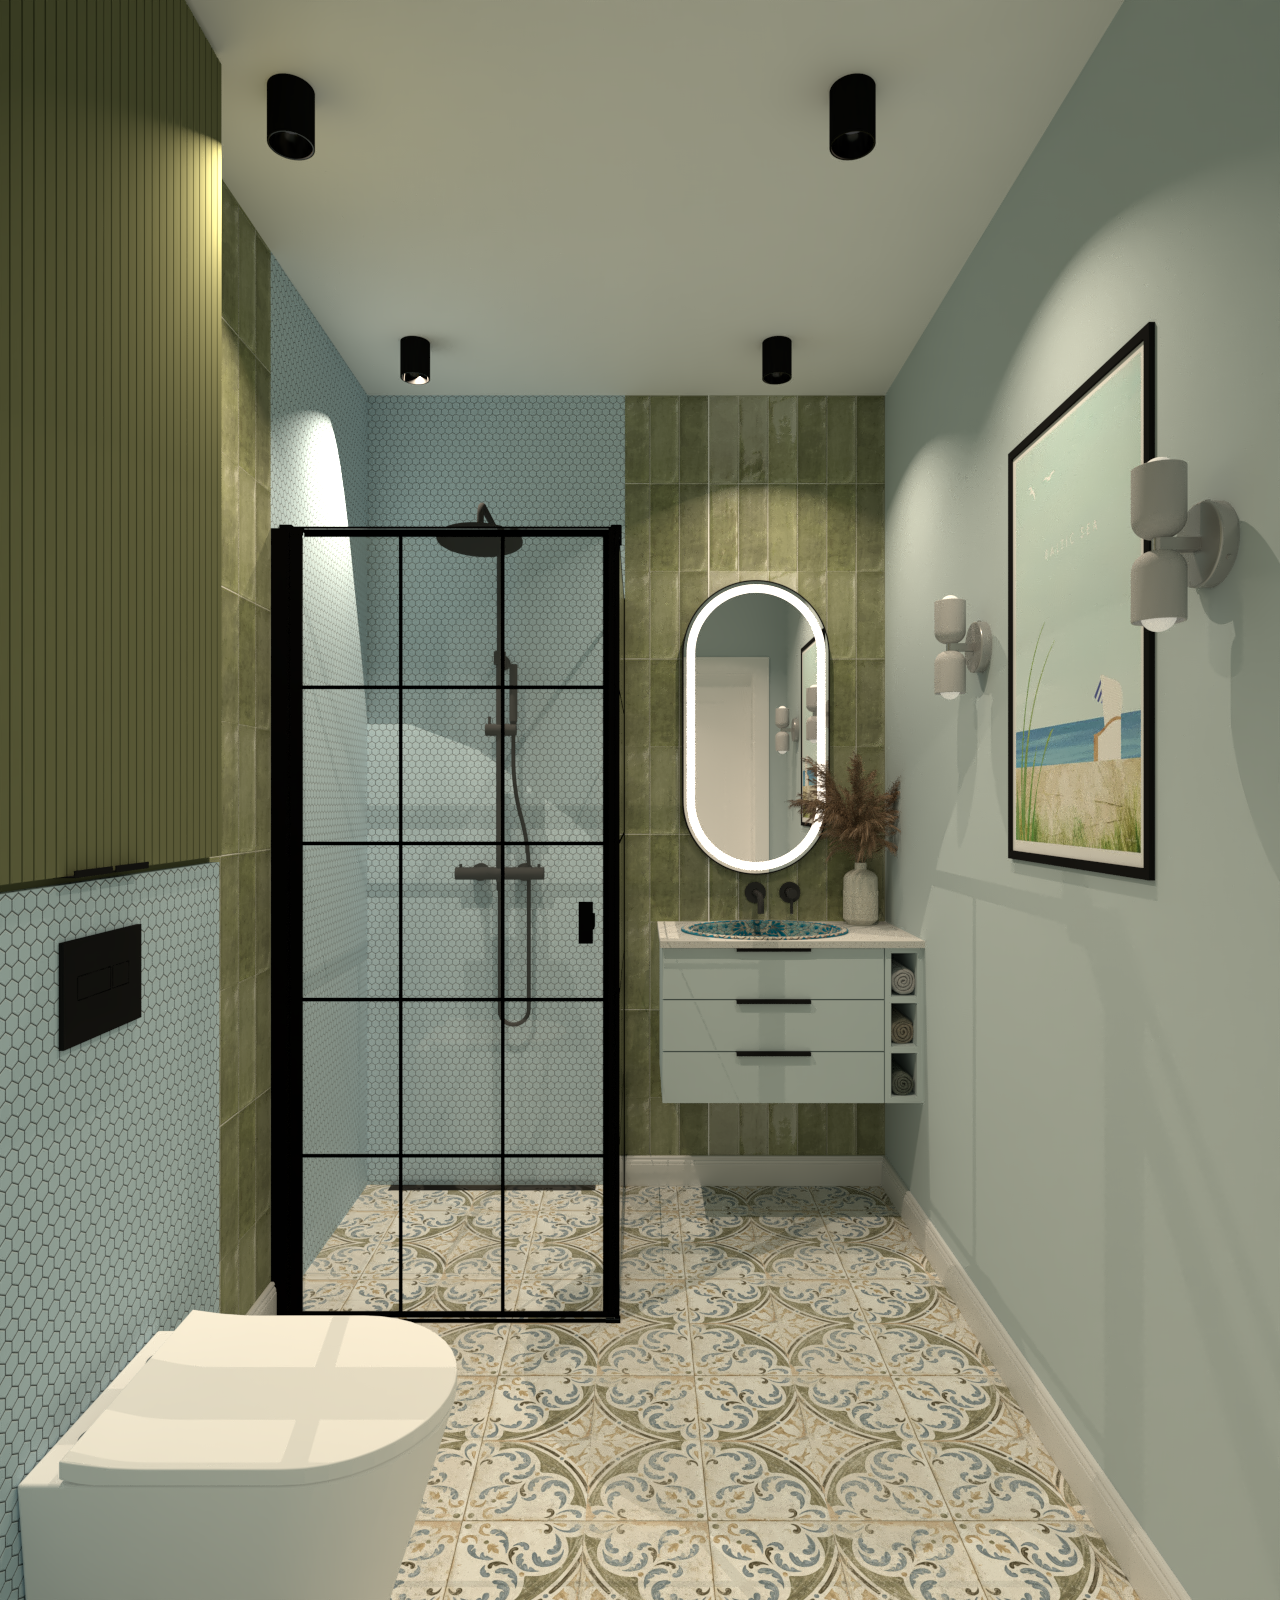 Błękitno zielona łazienka z czarnymi dodatkami, postarzanymi płytkami i błękitną mozaiką.